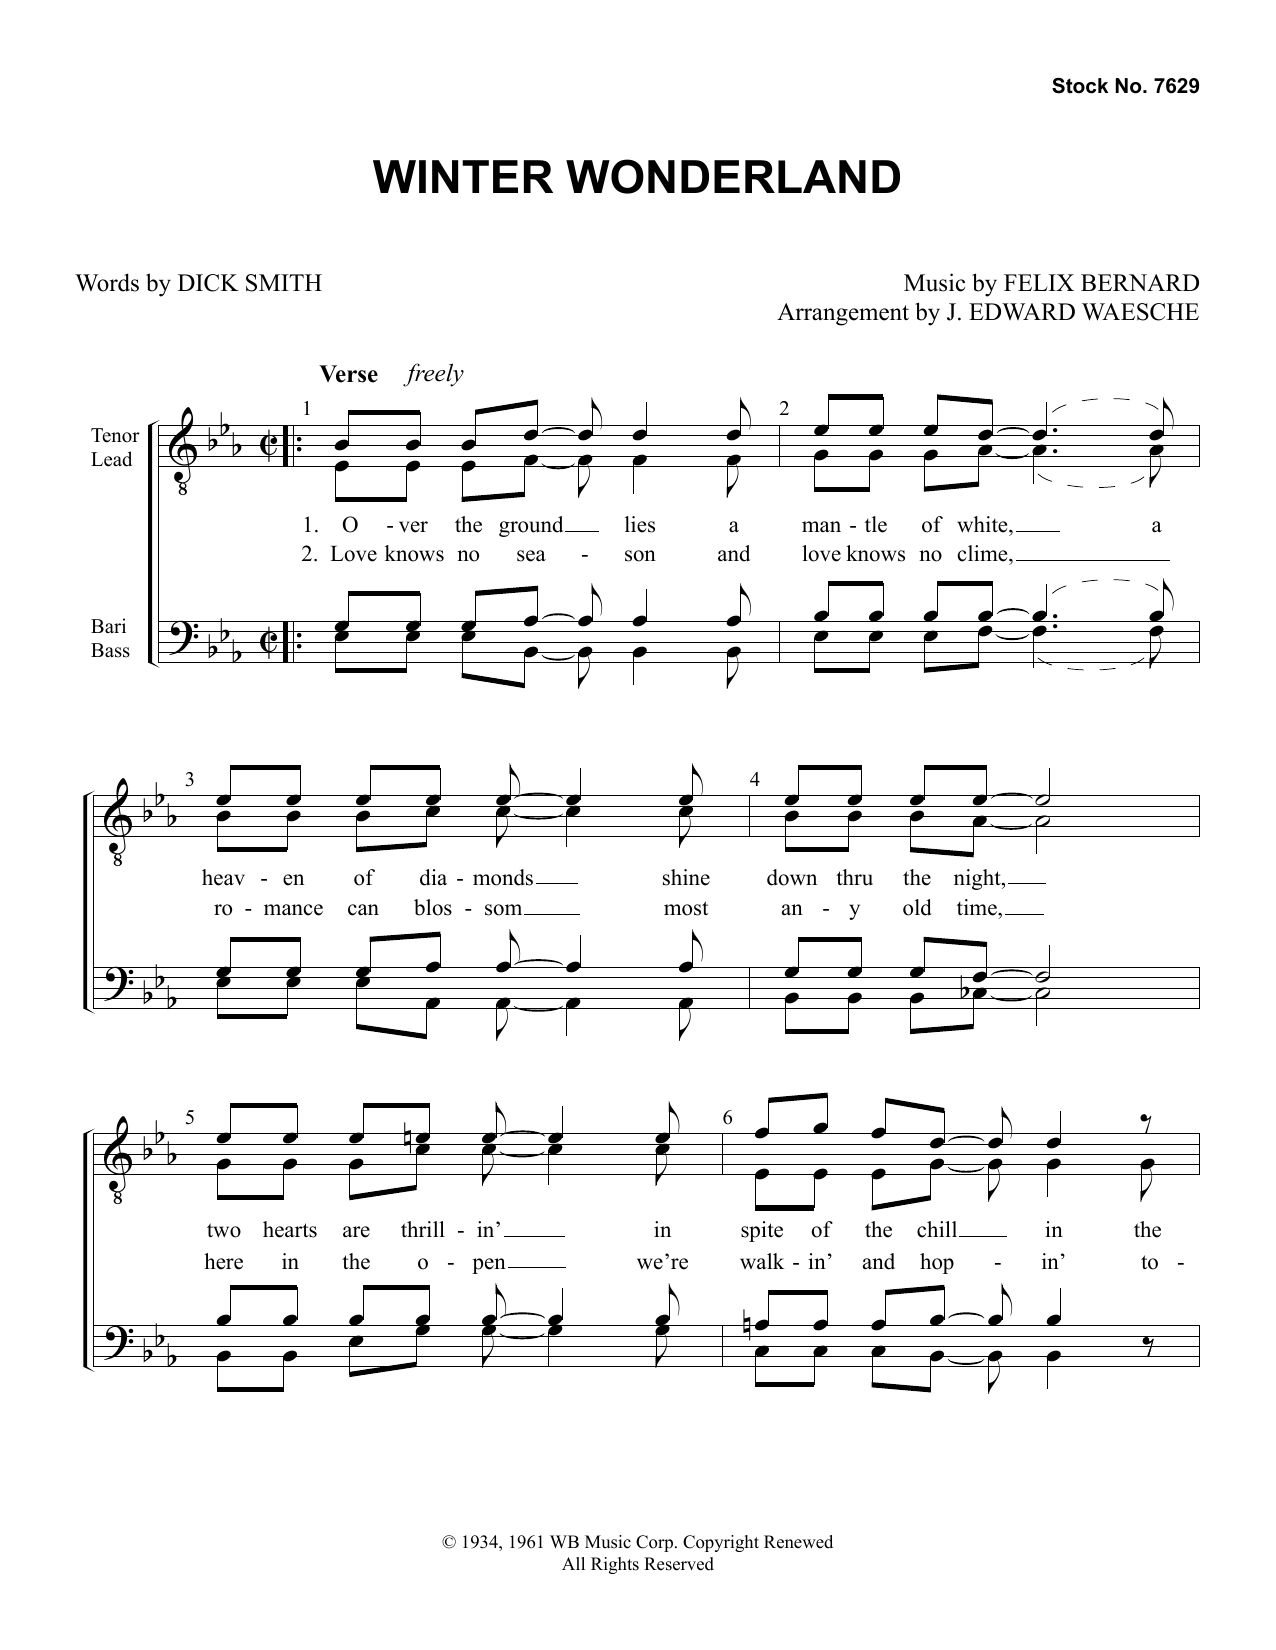 Dick Smith & Felix Bernard Winter Wonderland (arr. Ed Waesche) Sheet Music Notes & Chords for SSAA Choir - Download or Print PDF